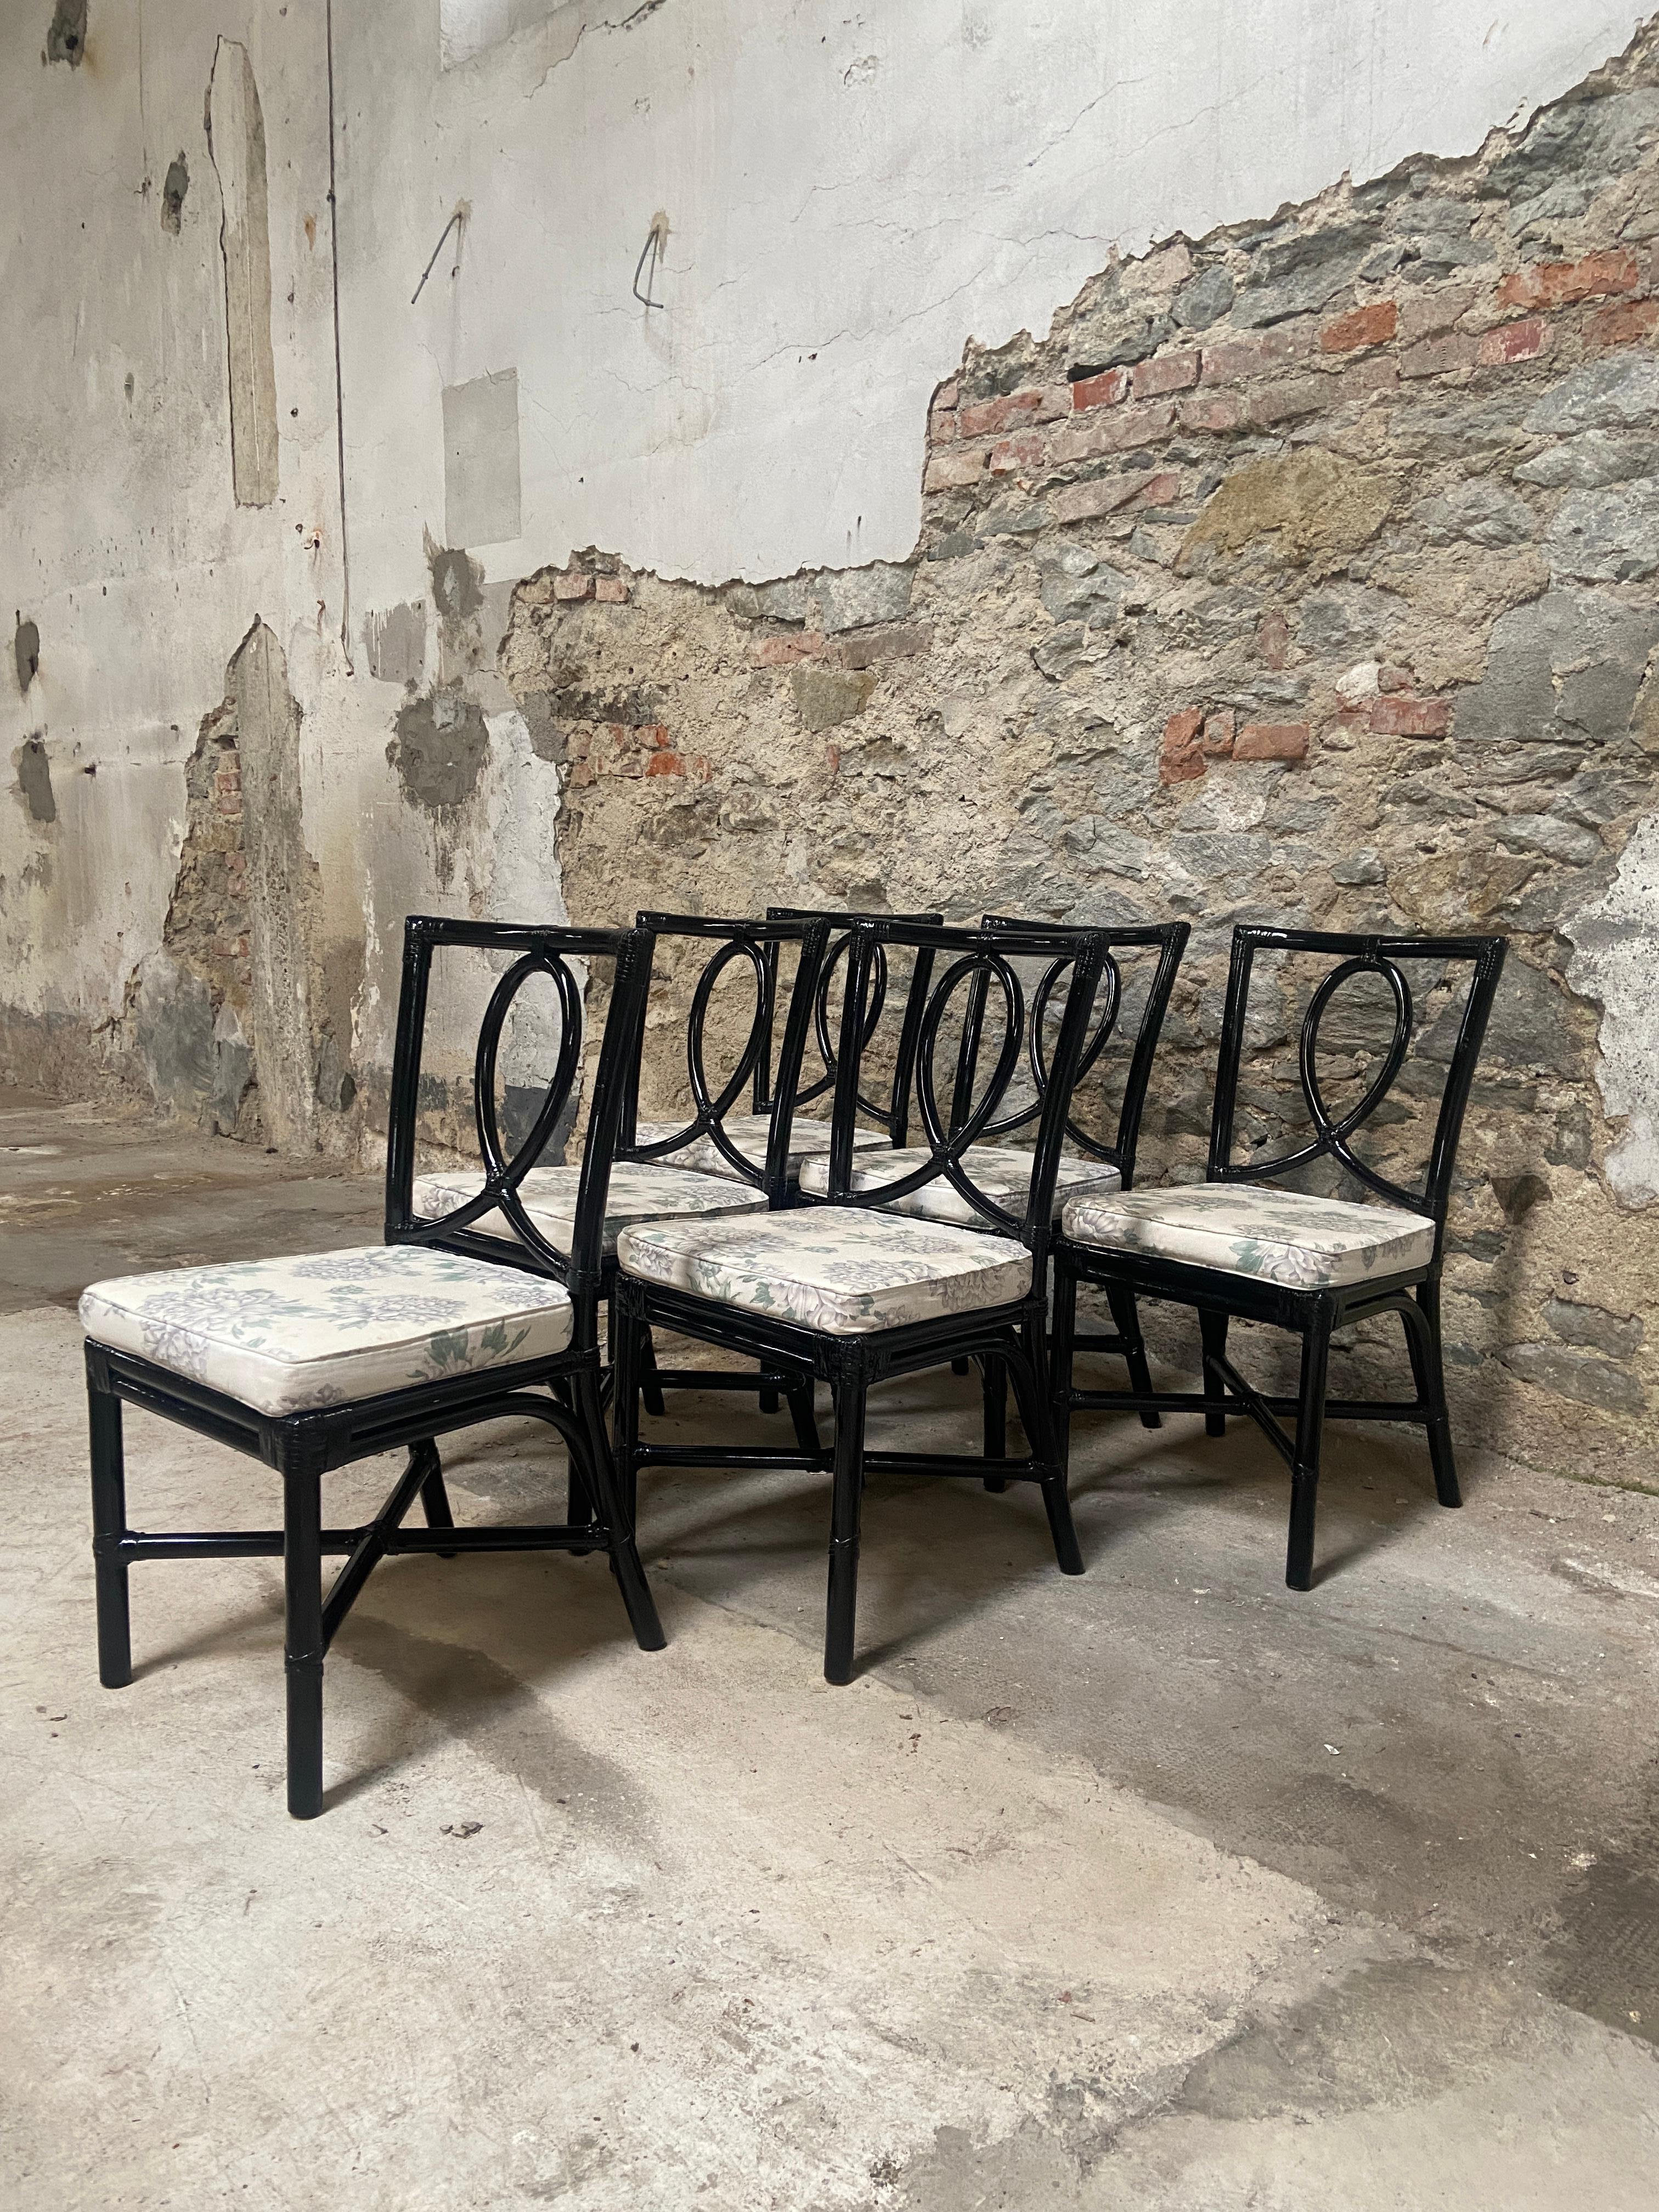 Mid-Century Modernes italienisches Set von 6 glänzend schwarz lackierten Bambusstühlen von Vivai del Sud mit Original Baumwollstoffkissen. 1970s
Die Stühle sind in wirklich perfektem Vintage-Zustand, die Struktur ist solide und stark, als wären sie